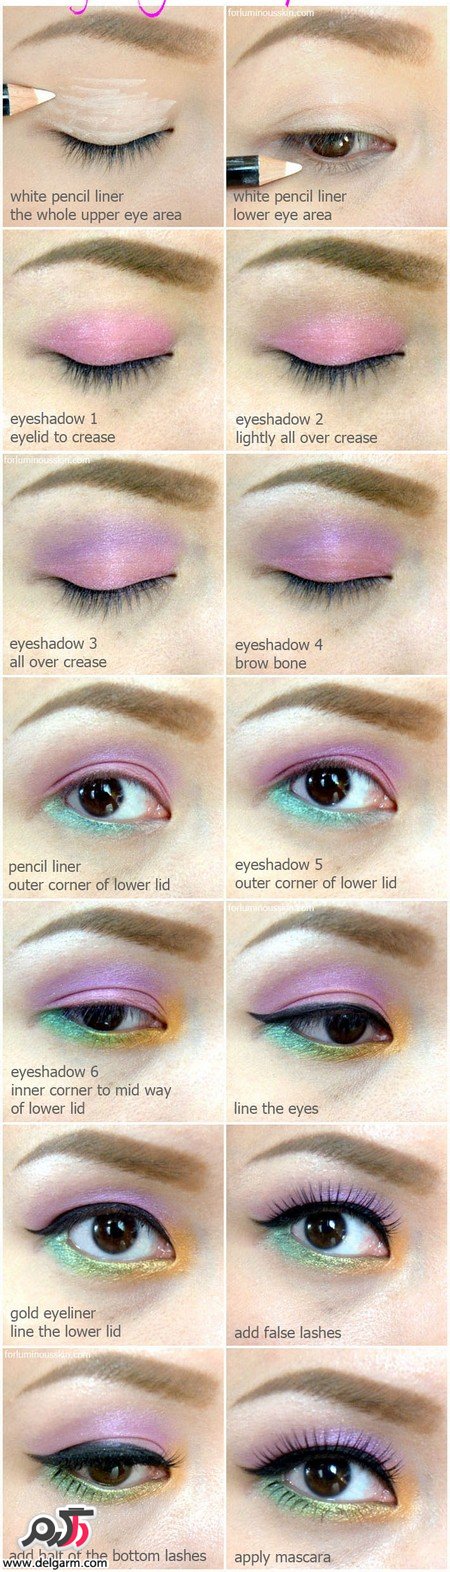 آموزش آرایش چشم ترکیبی رنگین کمان